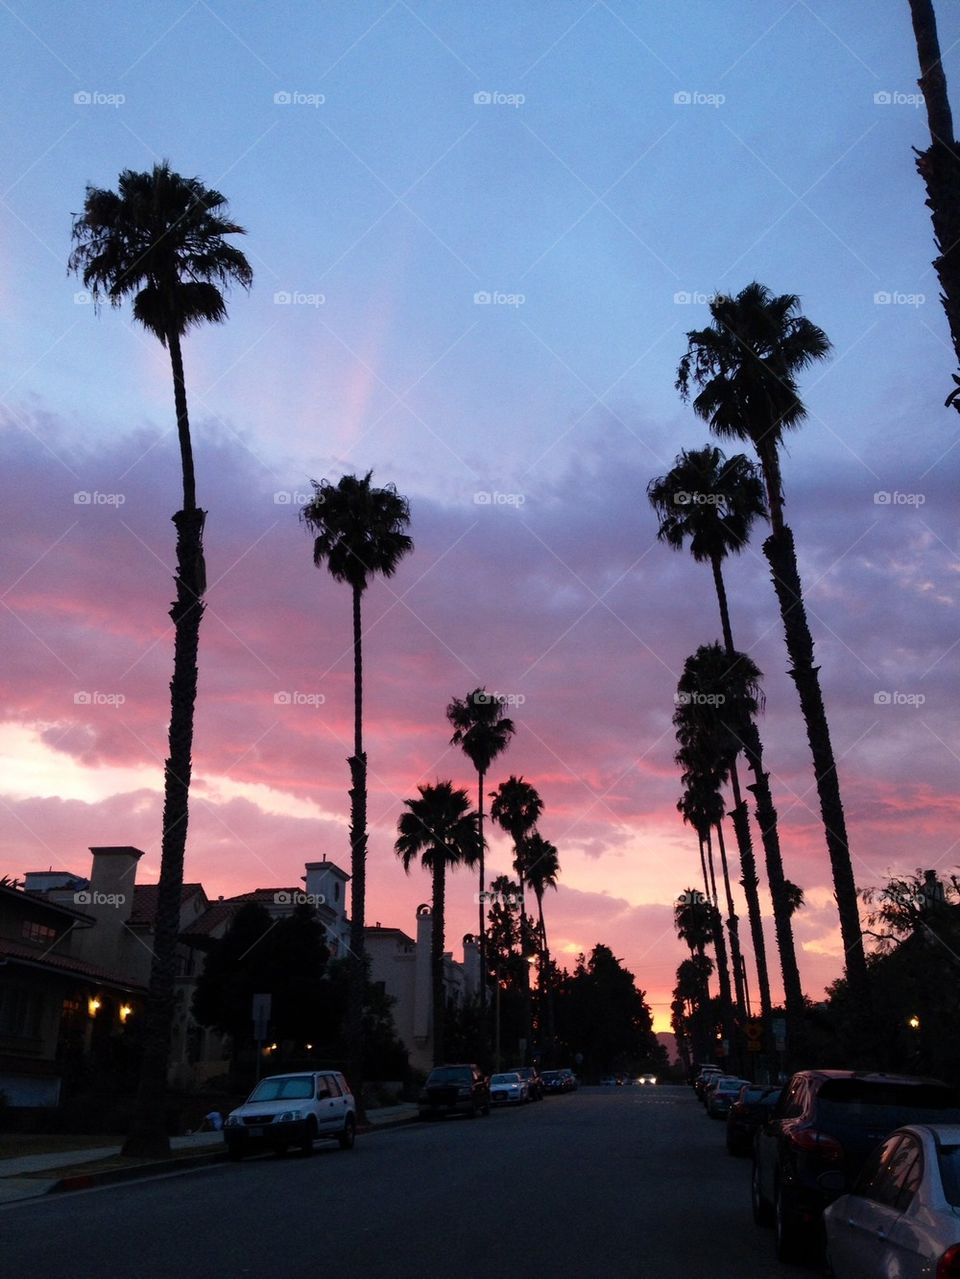 Palms at dusk